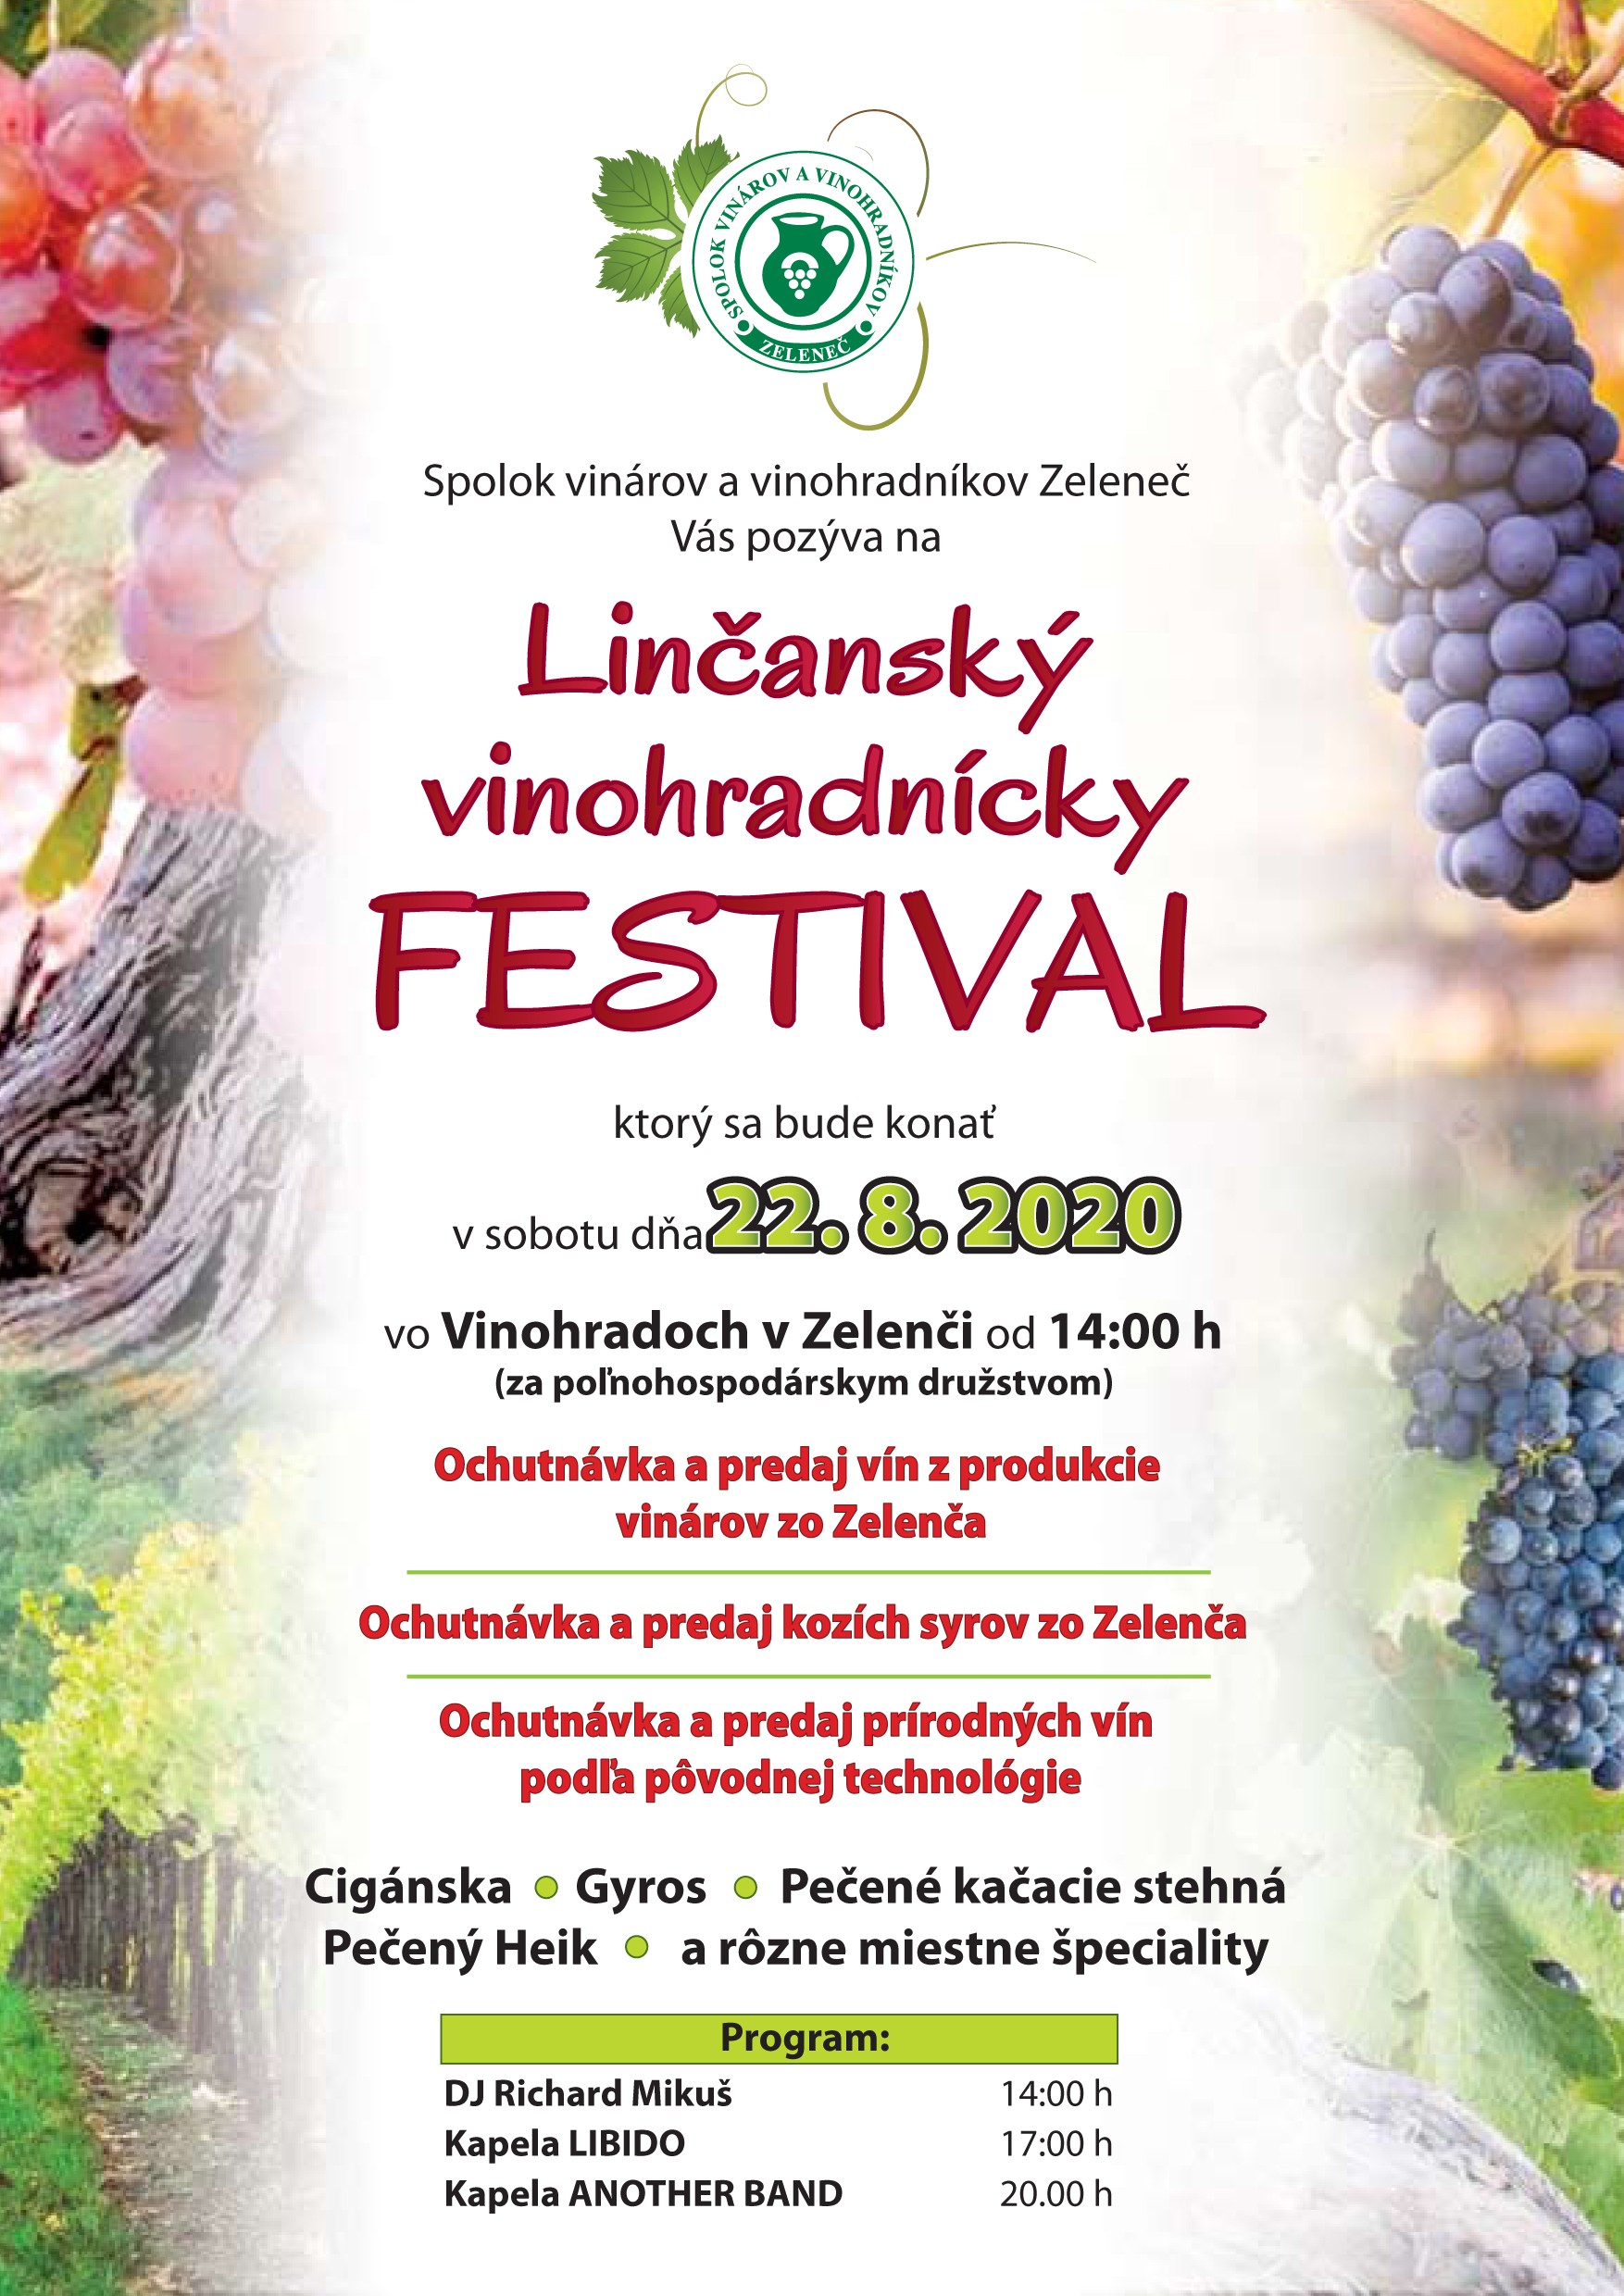 NOV - - - Linansk vinohradncky festival Zelene 2020 - 7. ronk